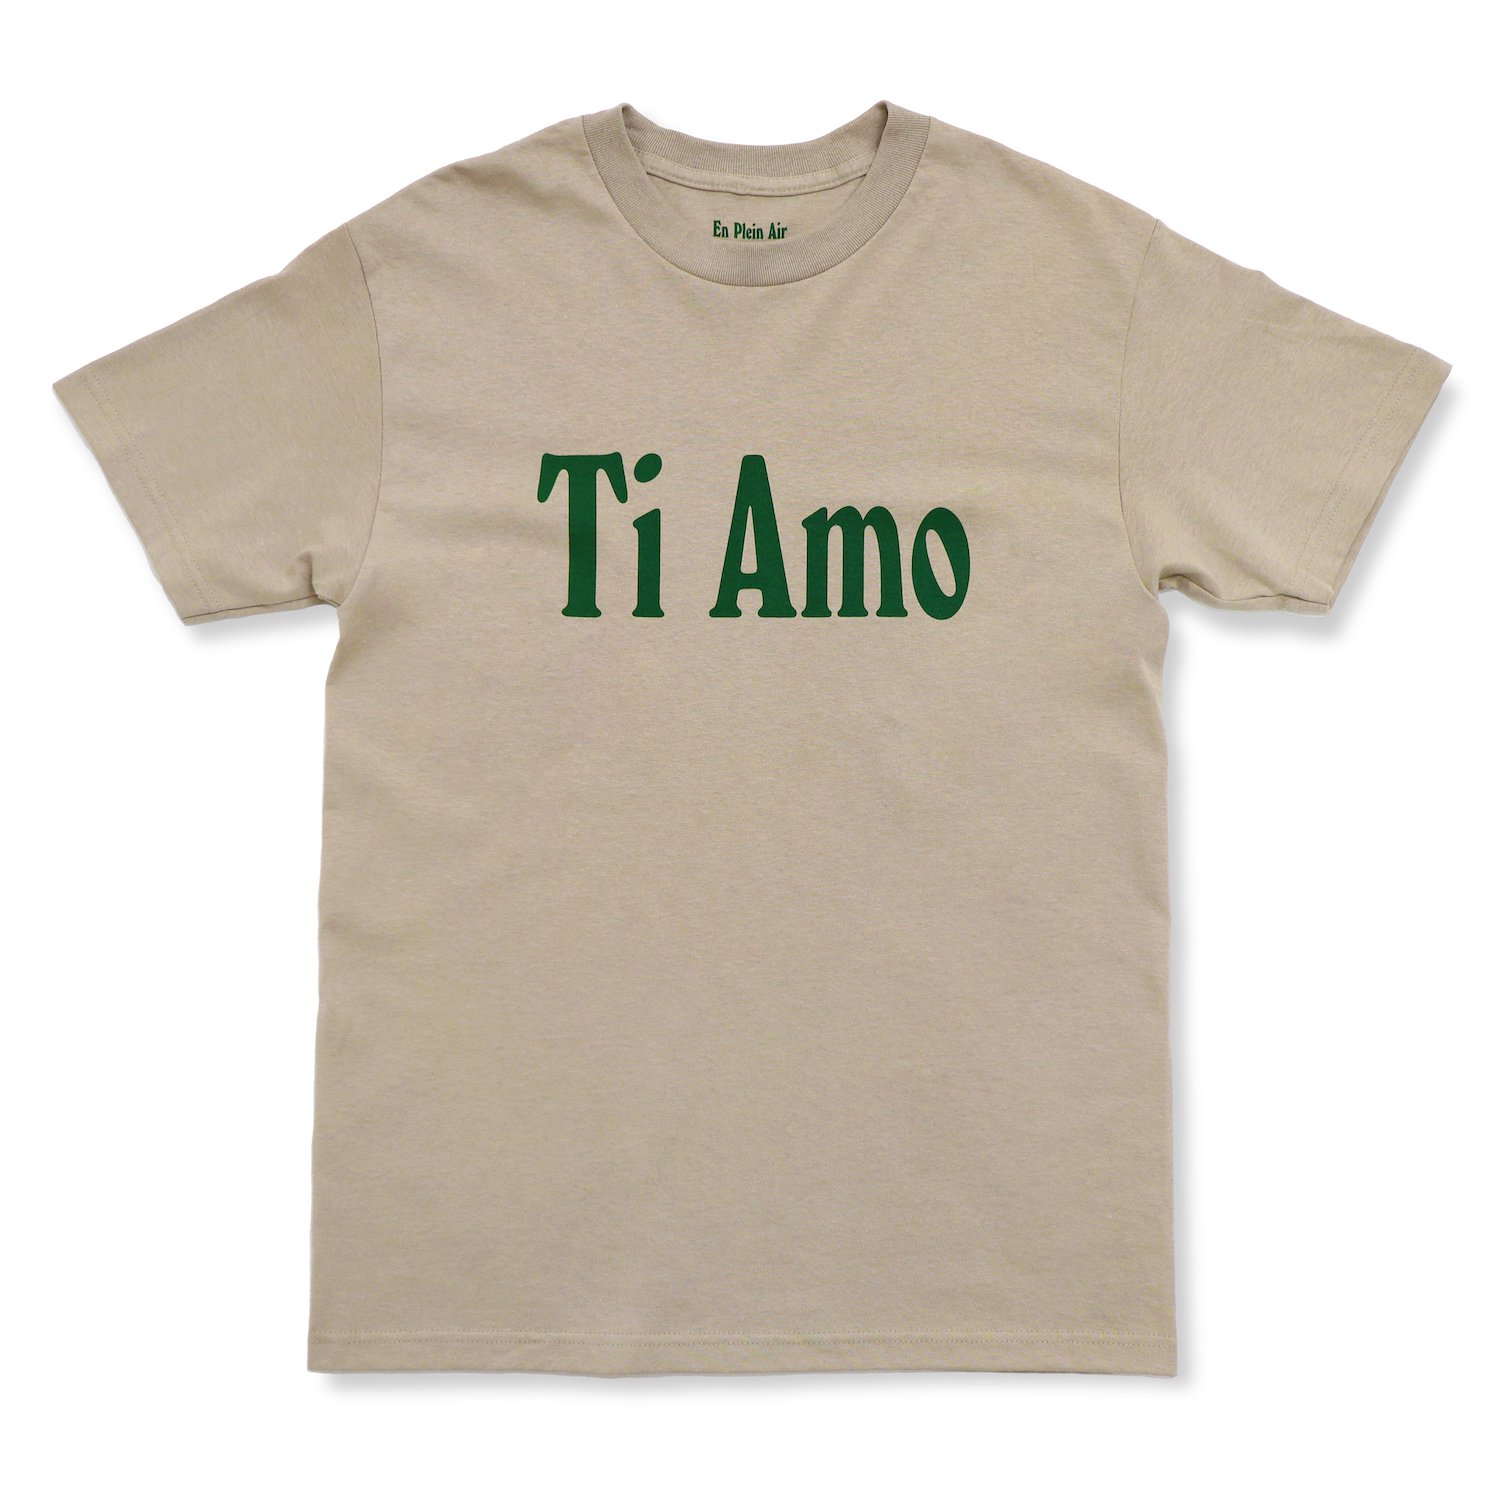 サイズXL Ti Amo Logo Tee for En Plein Air - Tシャツ/カットソー